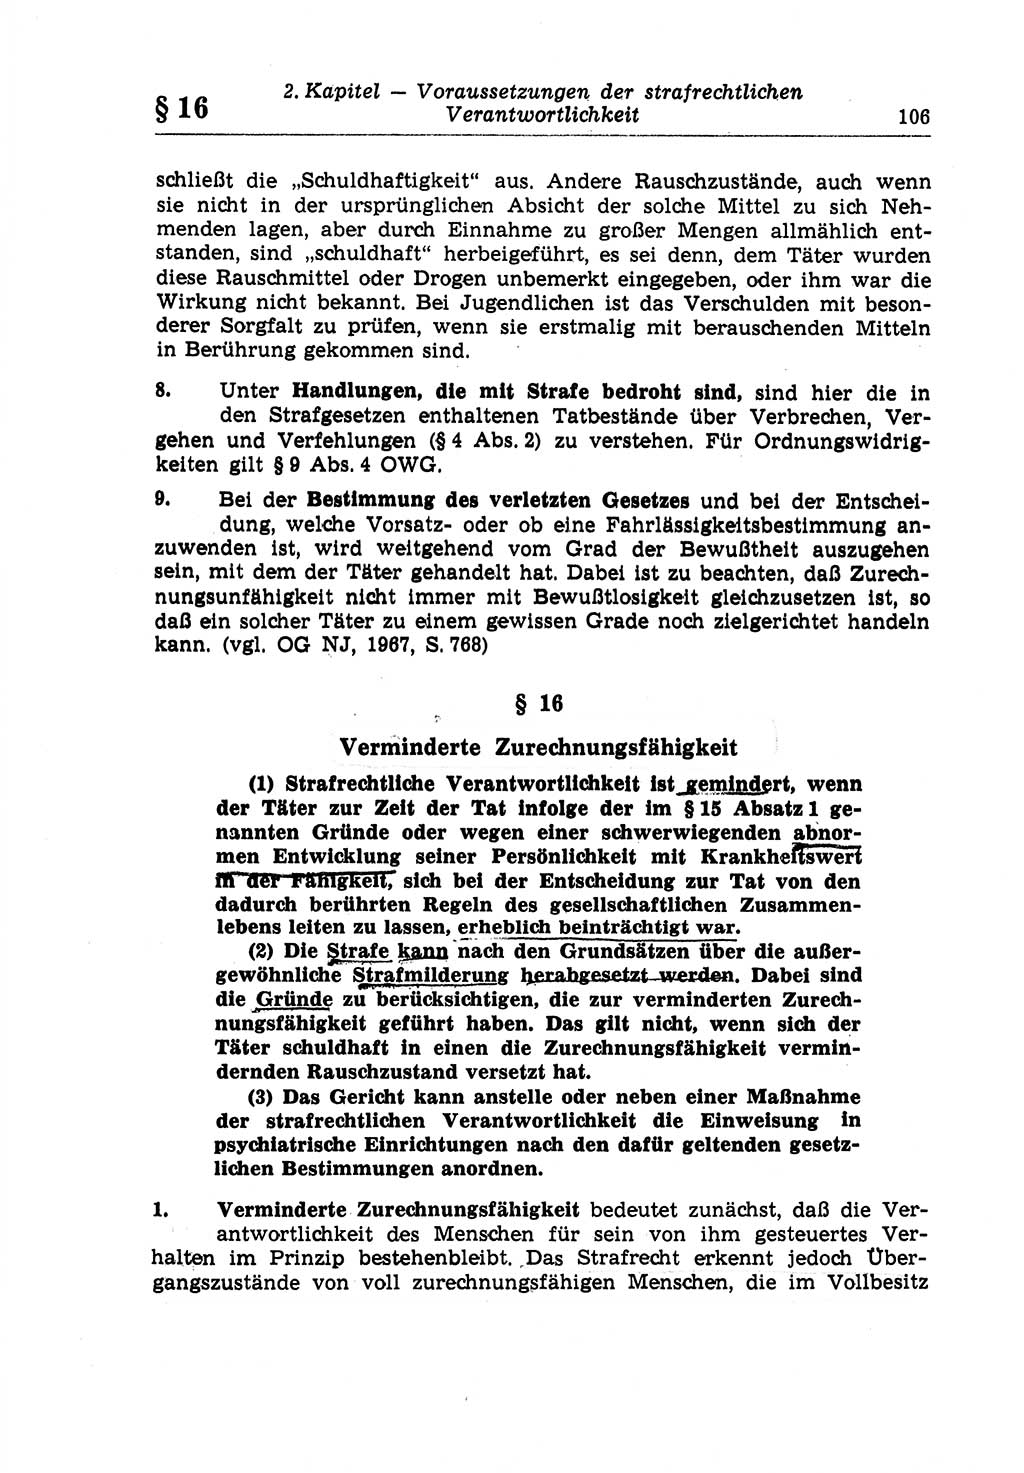 Strafrecht der Deutschen Demokratischen Republik (DDR), Lehrkommentar zum Strafgesetzbuch (StGB), Allgemeiner Teil 1970, Seite 106 (Strafr. DDR Lehrkomm. StGB AT 1970, S. 106)